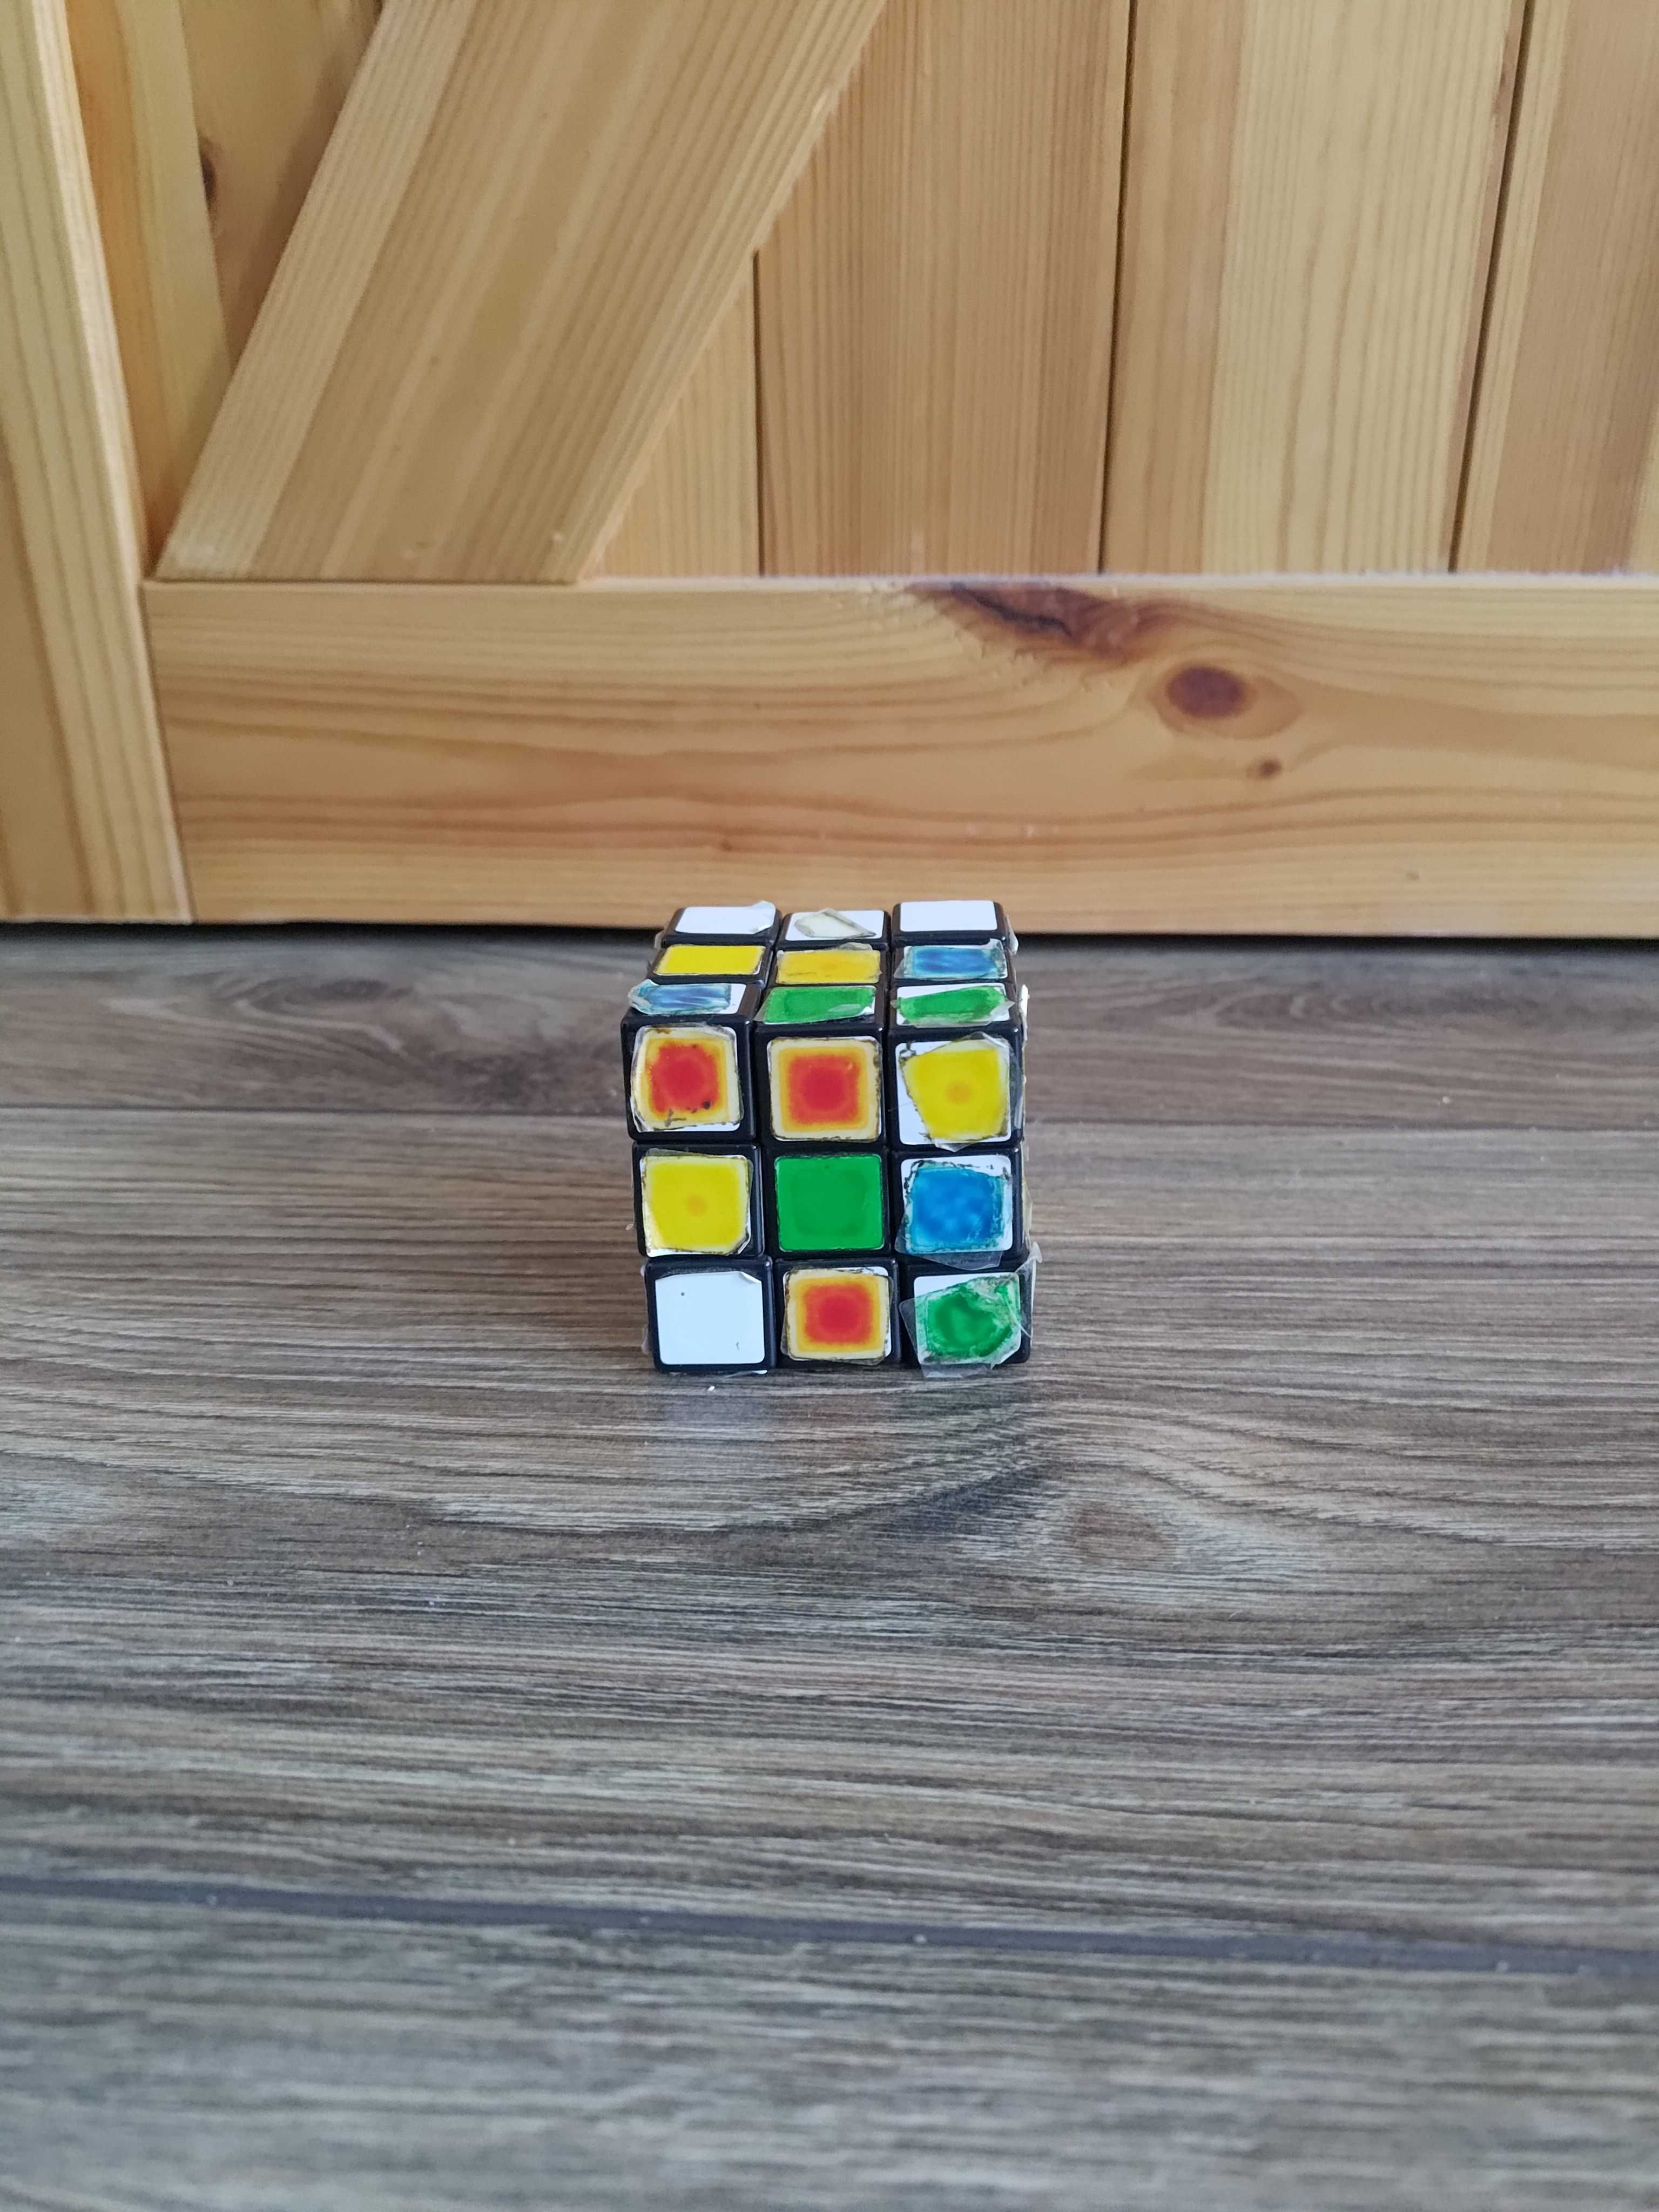 TANIO kostka Rubika na części